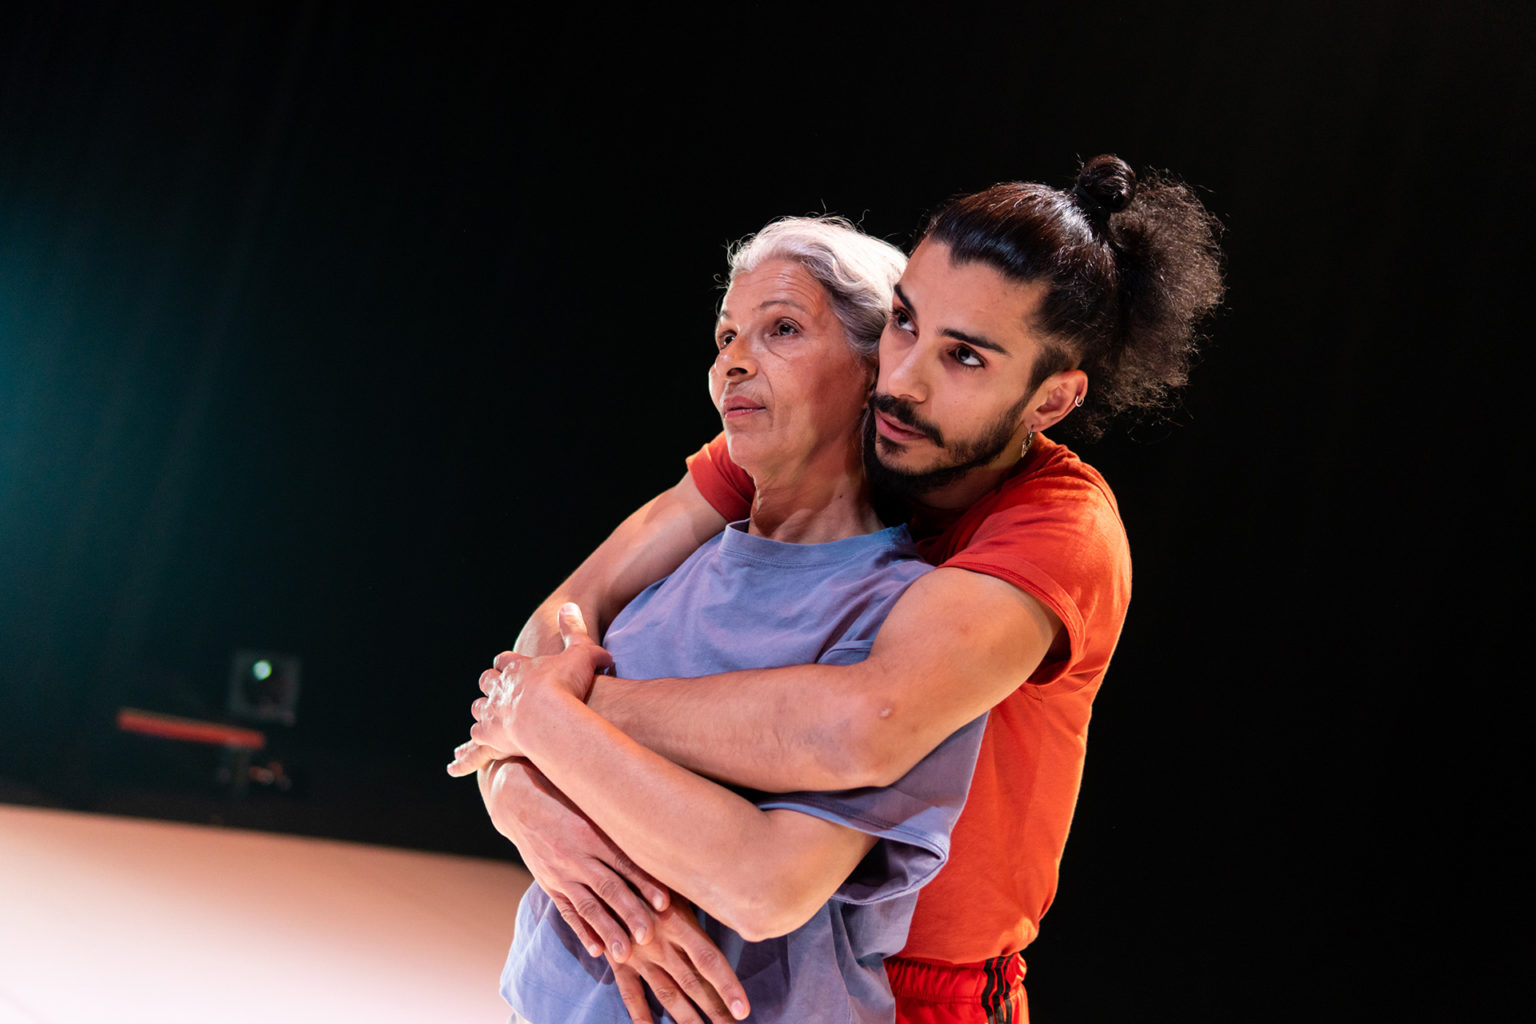 Le danseur Mohamed Toukabri est sur scène avec sa maman qu'il tient dans ses bras. Il porte un t-shirt de couleur orange et sa maman porte un t-shirt de couleur mauve.